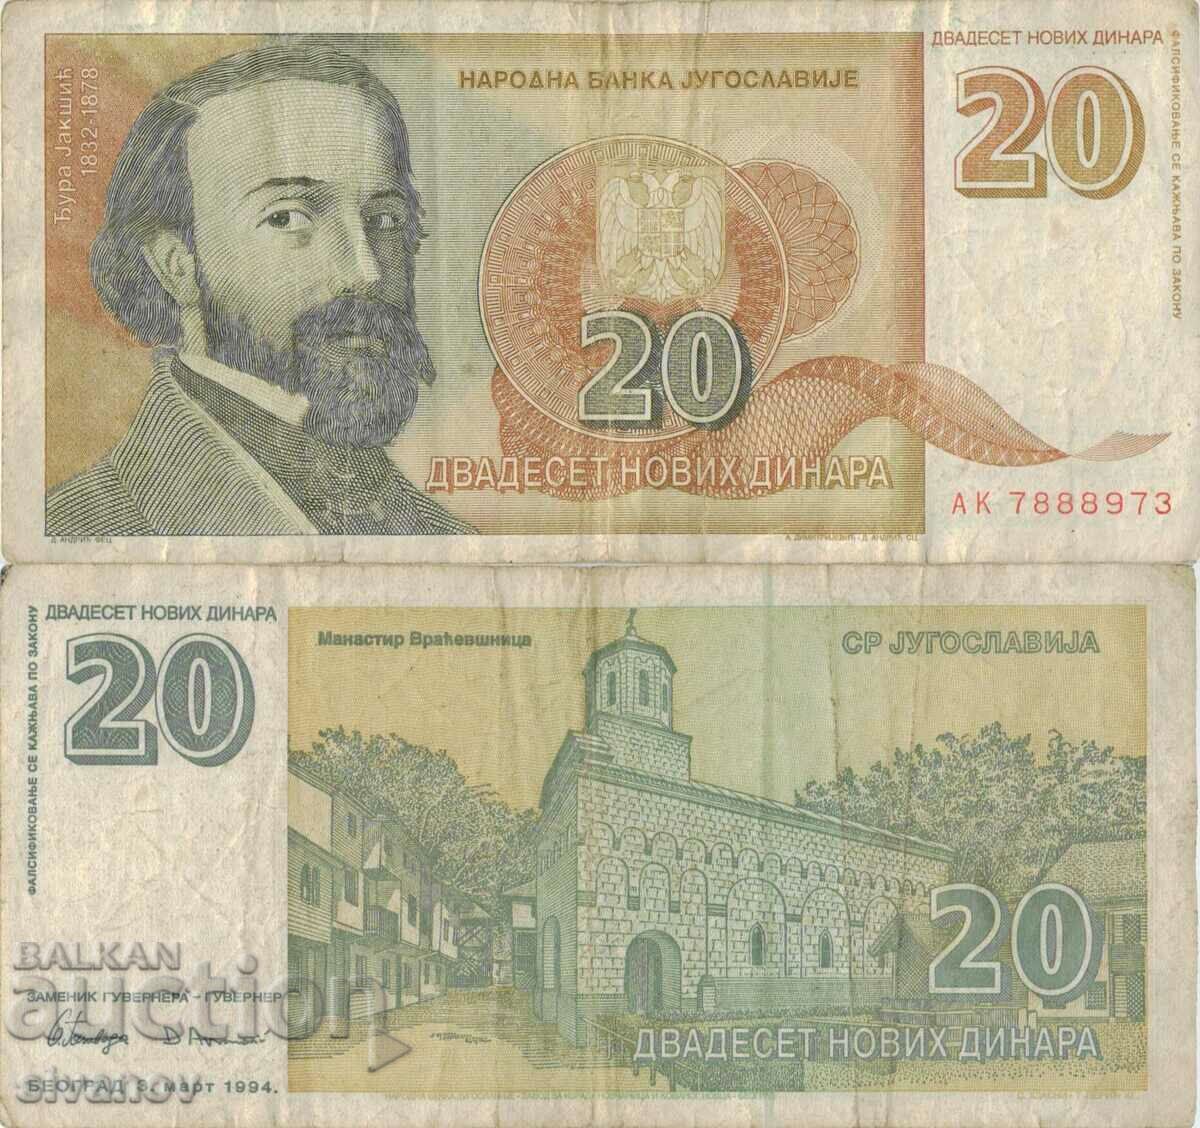 Yugoslavia 20 dinars 1994 #5026